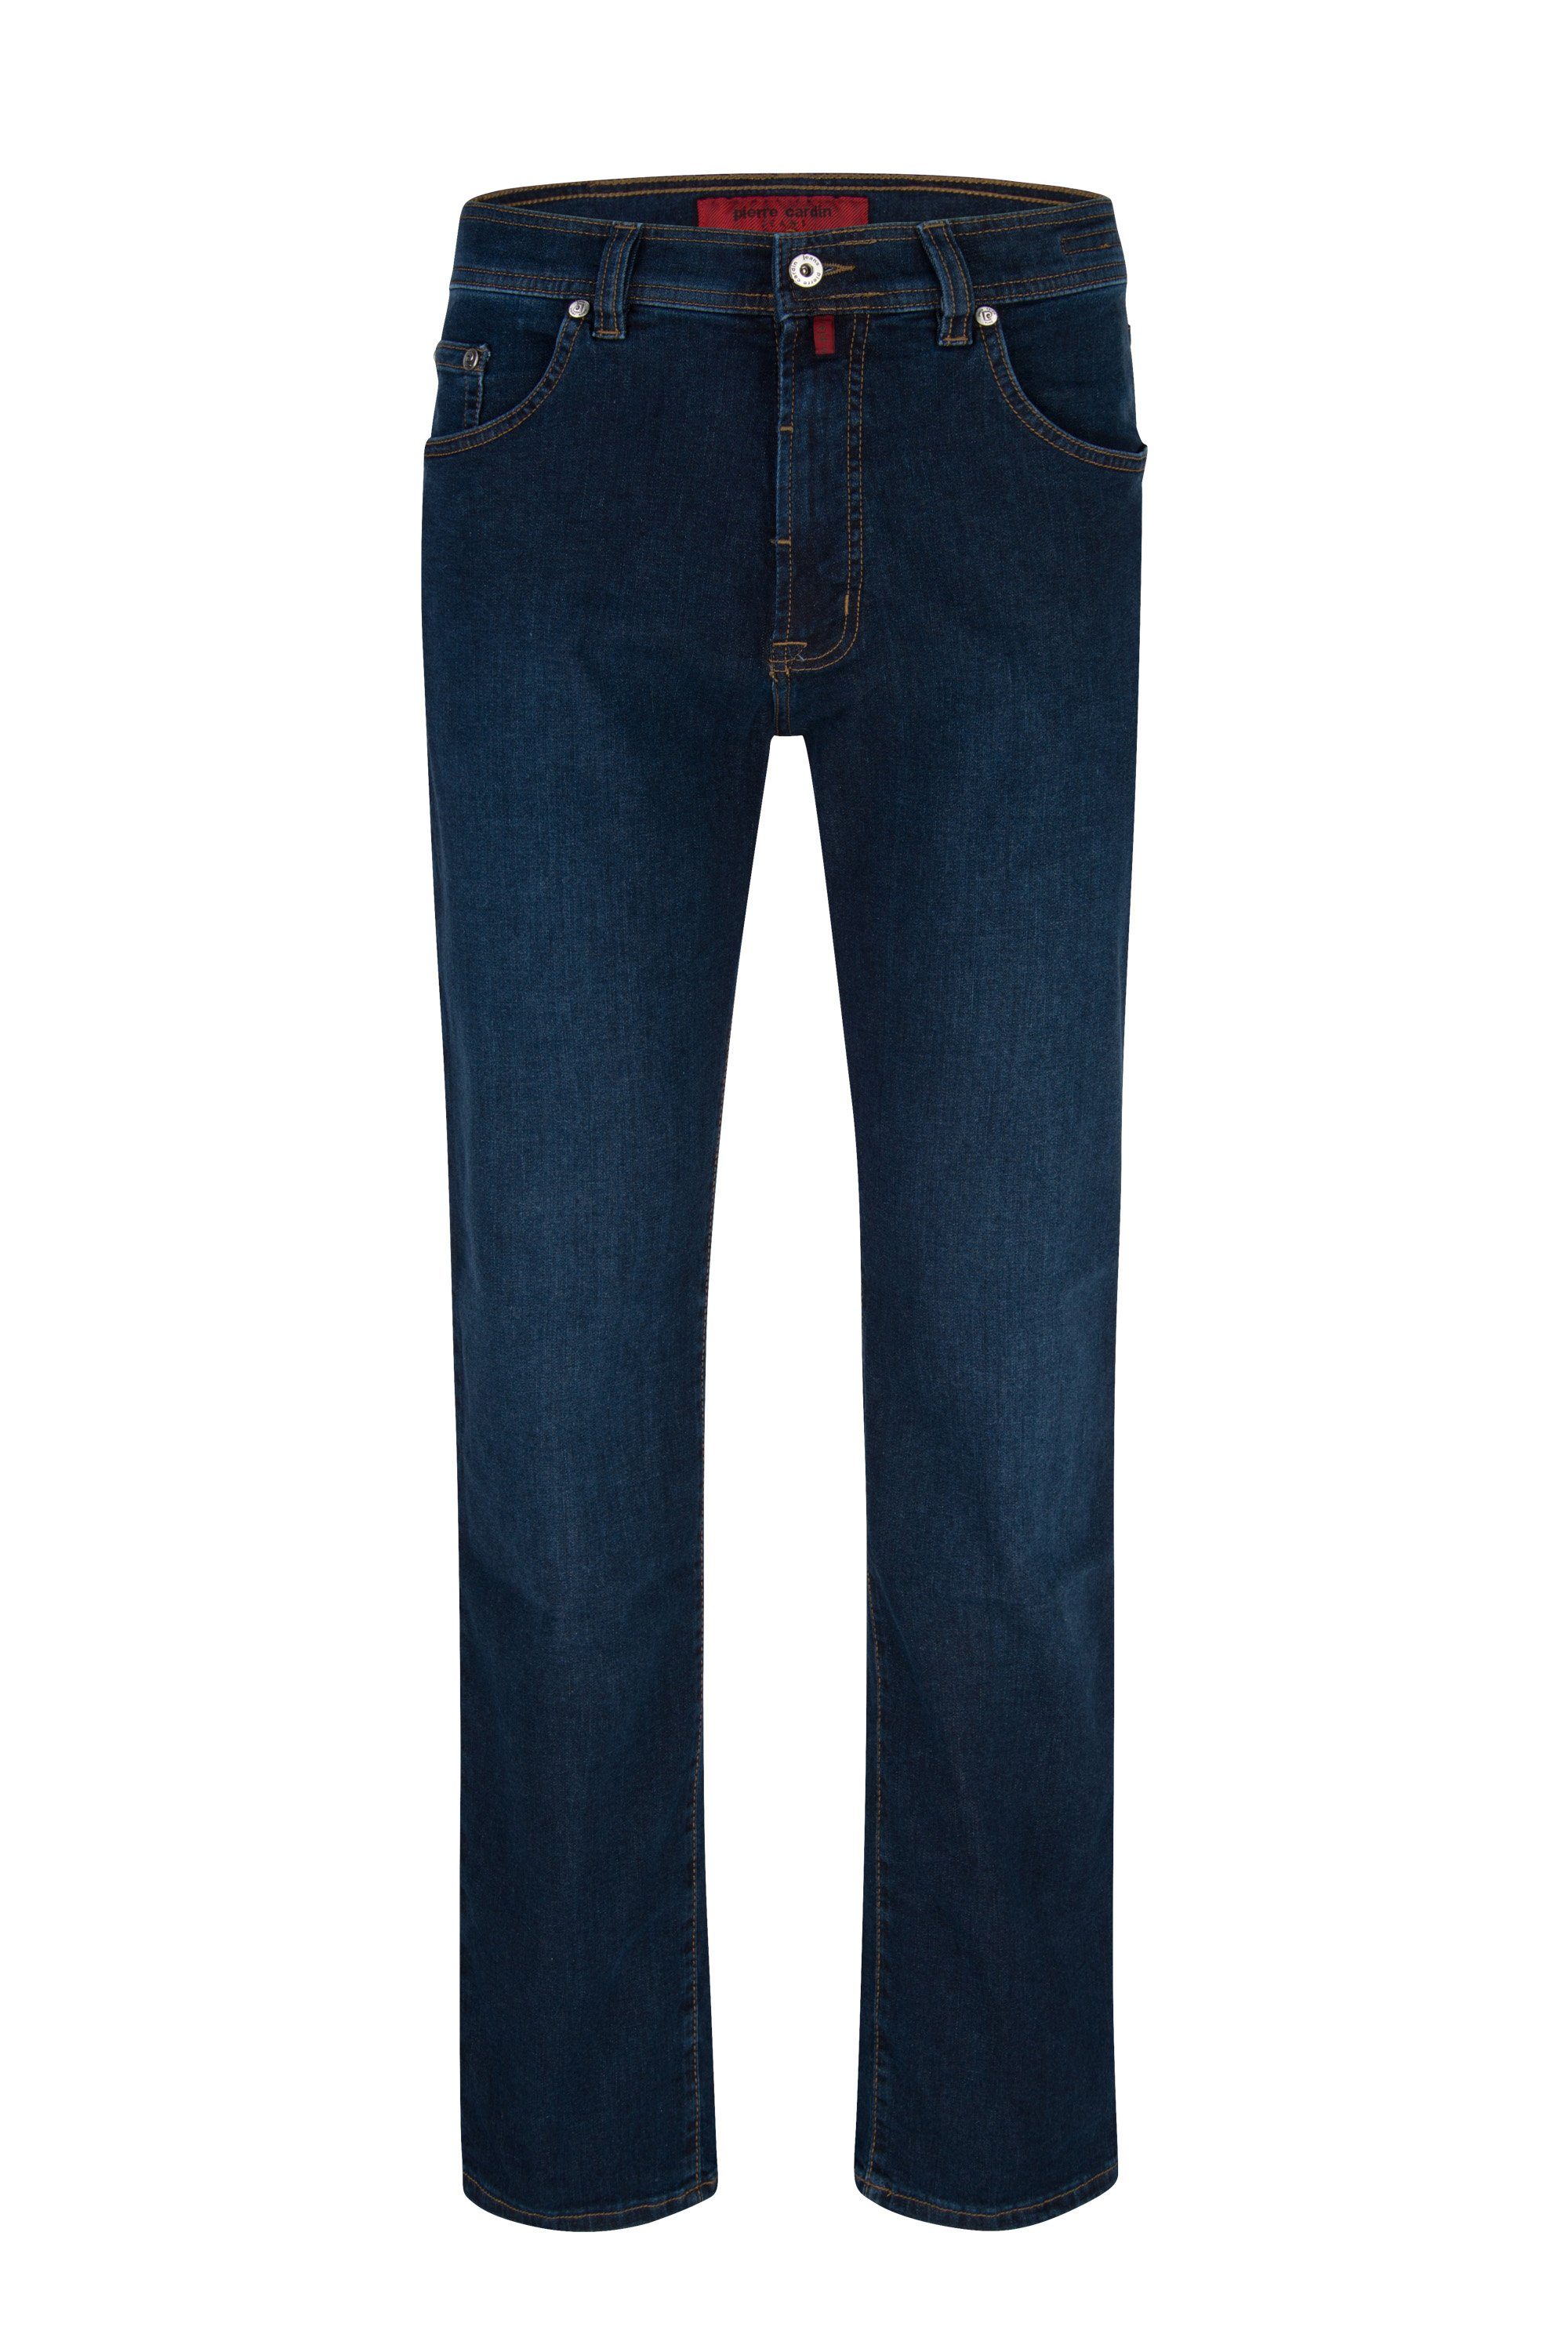 Pierre Cardin 5-Pocket-Jeans PIERRE CARDIN DIJON deep blue rinsed 3231 7301.02